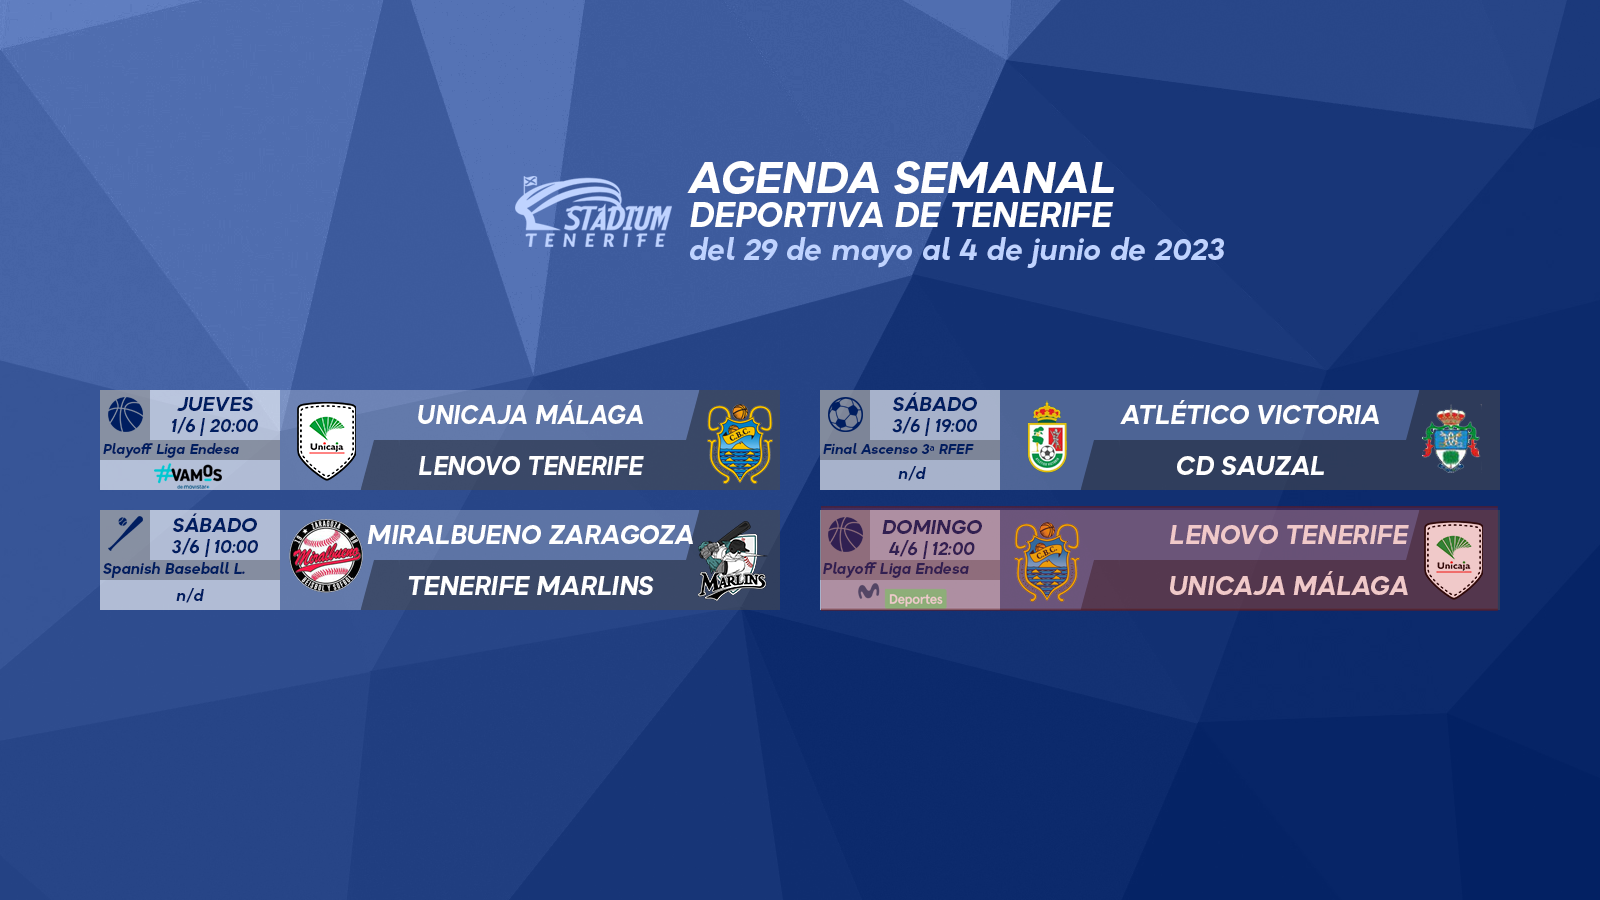 Agenda Semanal Deportiva de Tenerife (29 de mayo al 4 de junio)